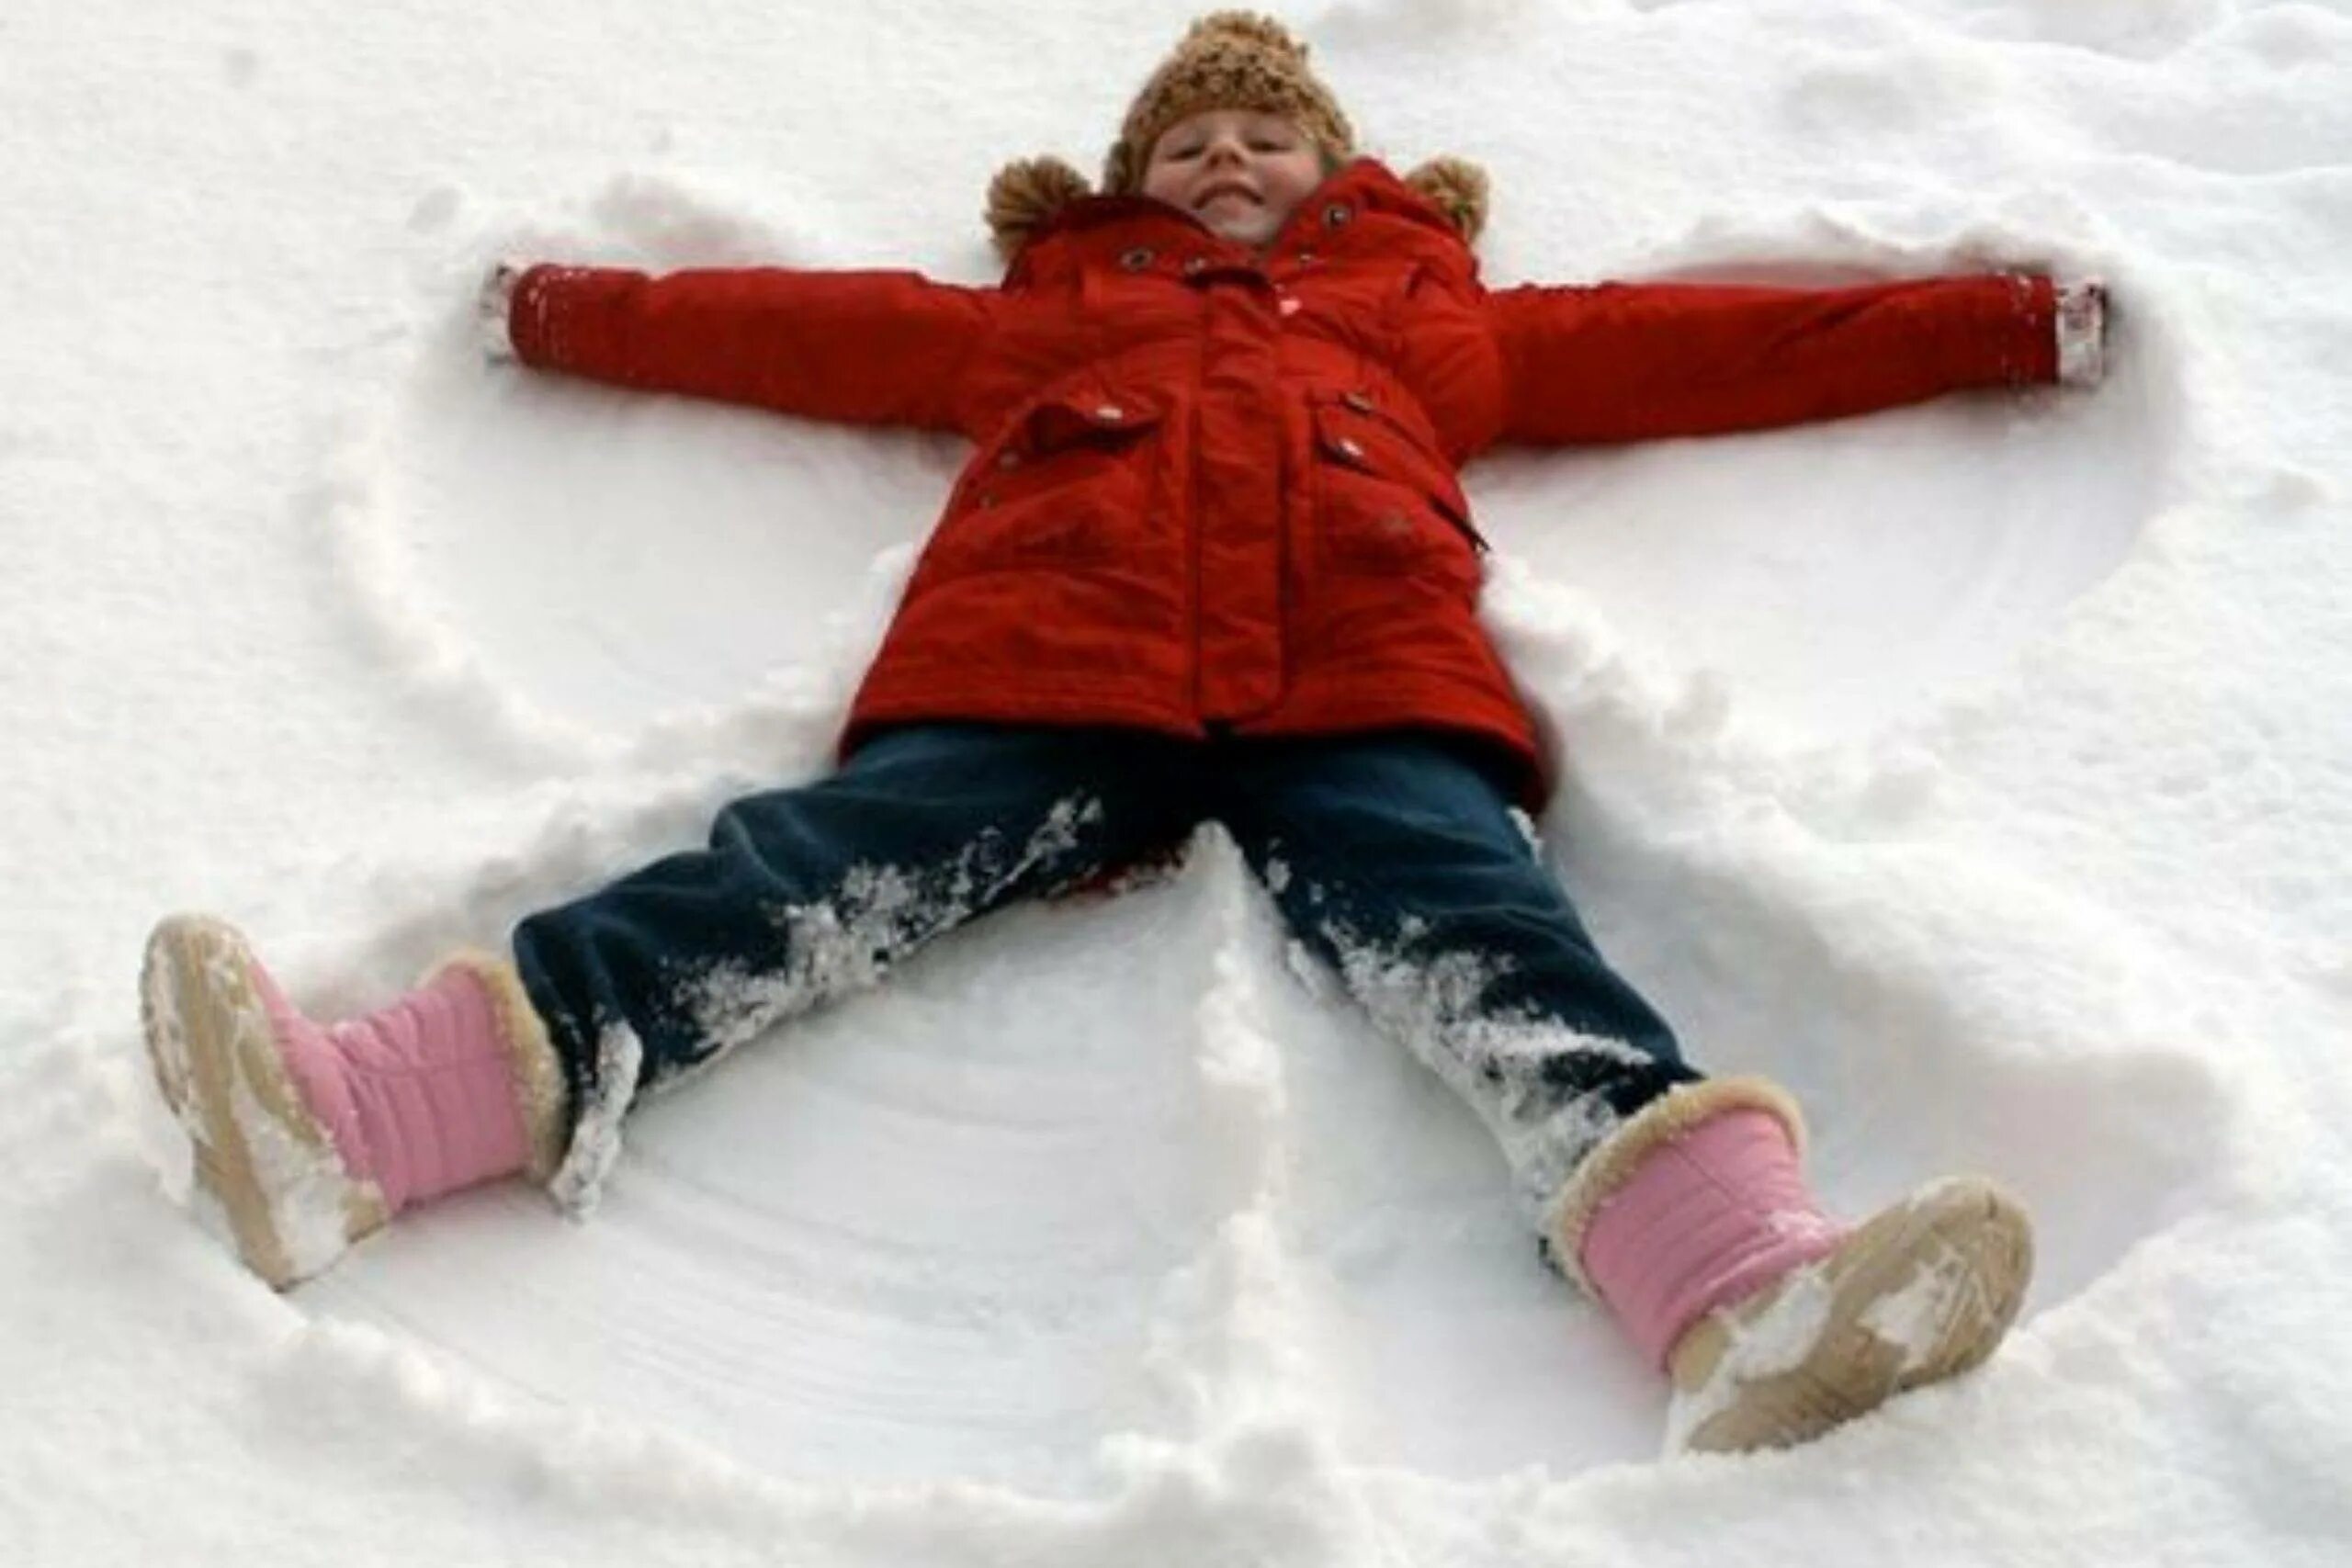 Зимой можно играть. Зимние развлечения. Зимние забавы для детей. Забавы в снегу. Зимние развлечения для детей на улице зимой.